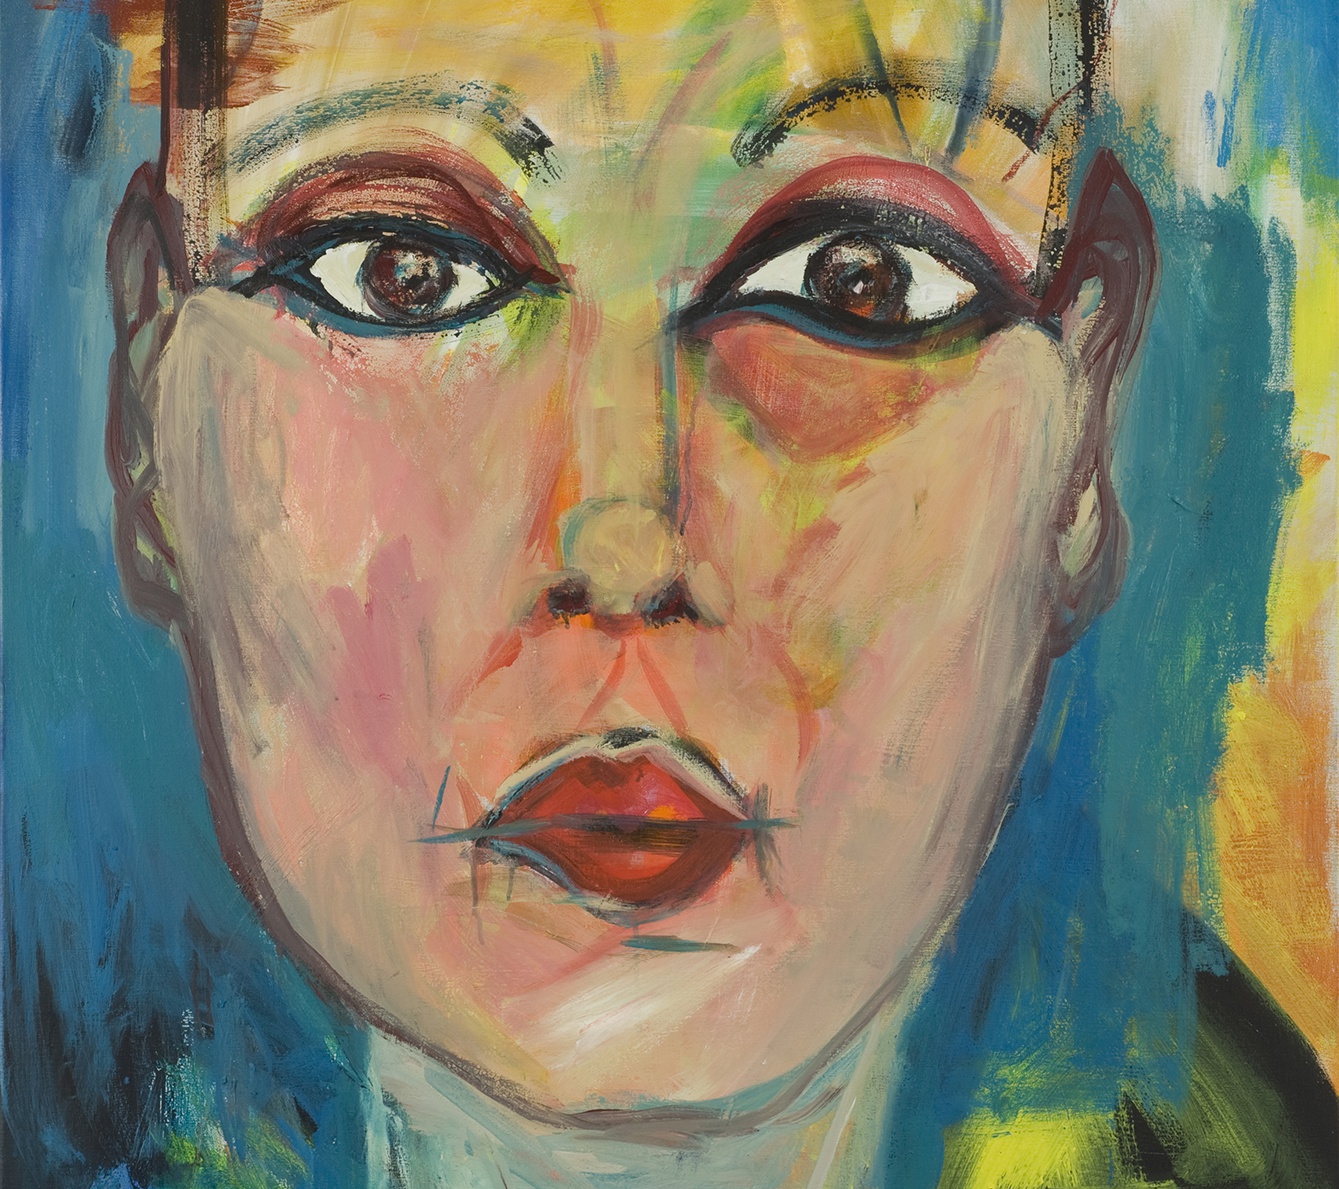 Marion Bloem verwerkt vaak teksten in haar schilderijen. Wat staat er op dit zelfportret?